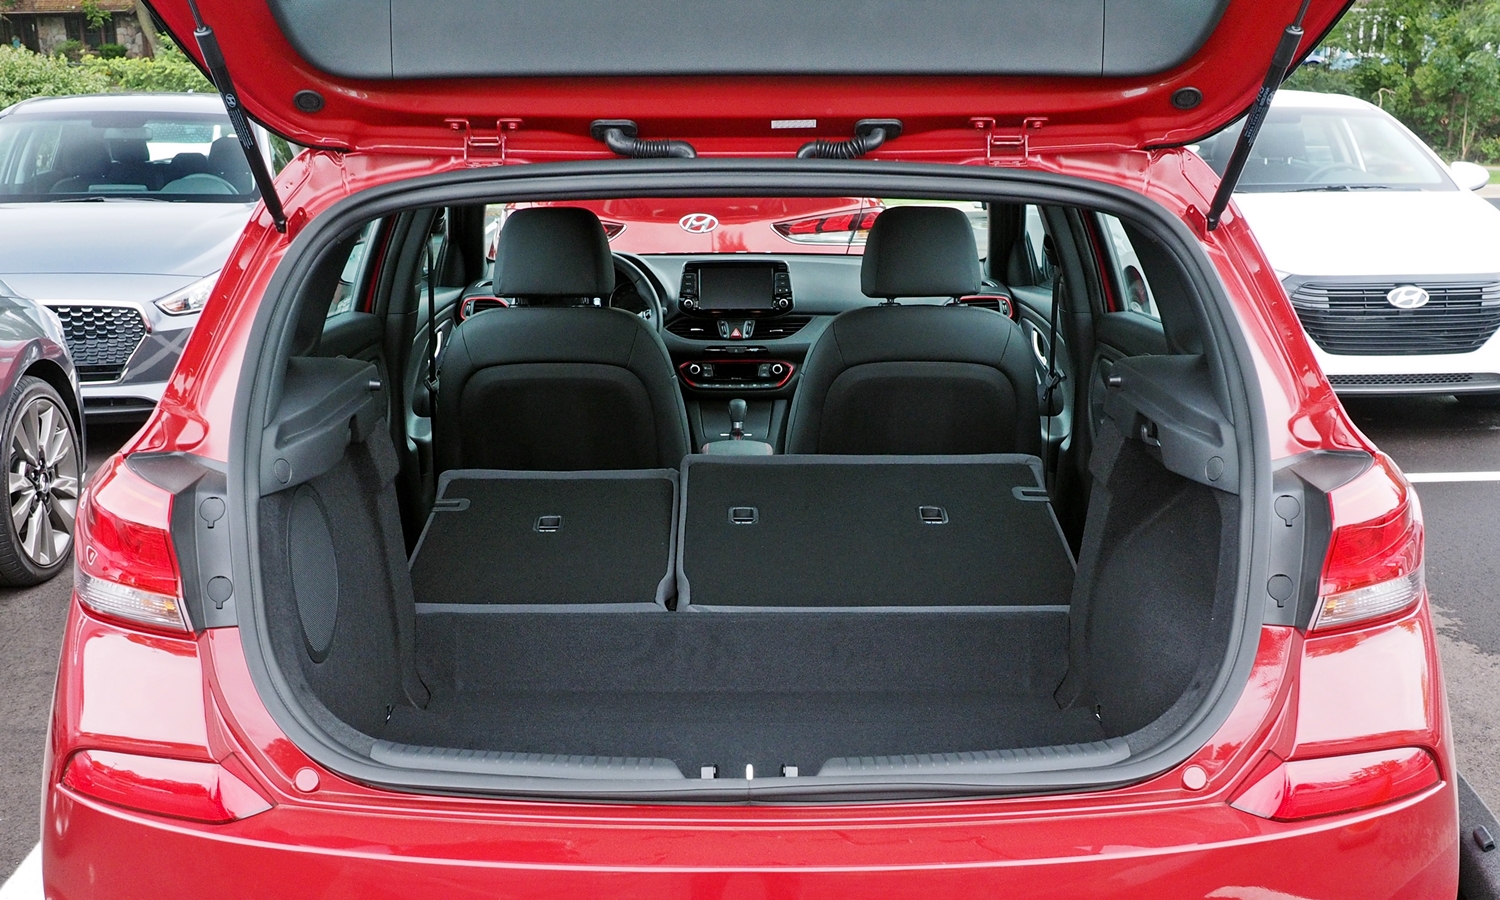 Hyundai Elantra GT Photos: Hyundai Elanta GT cargo area seats folded